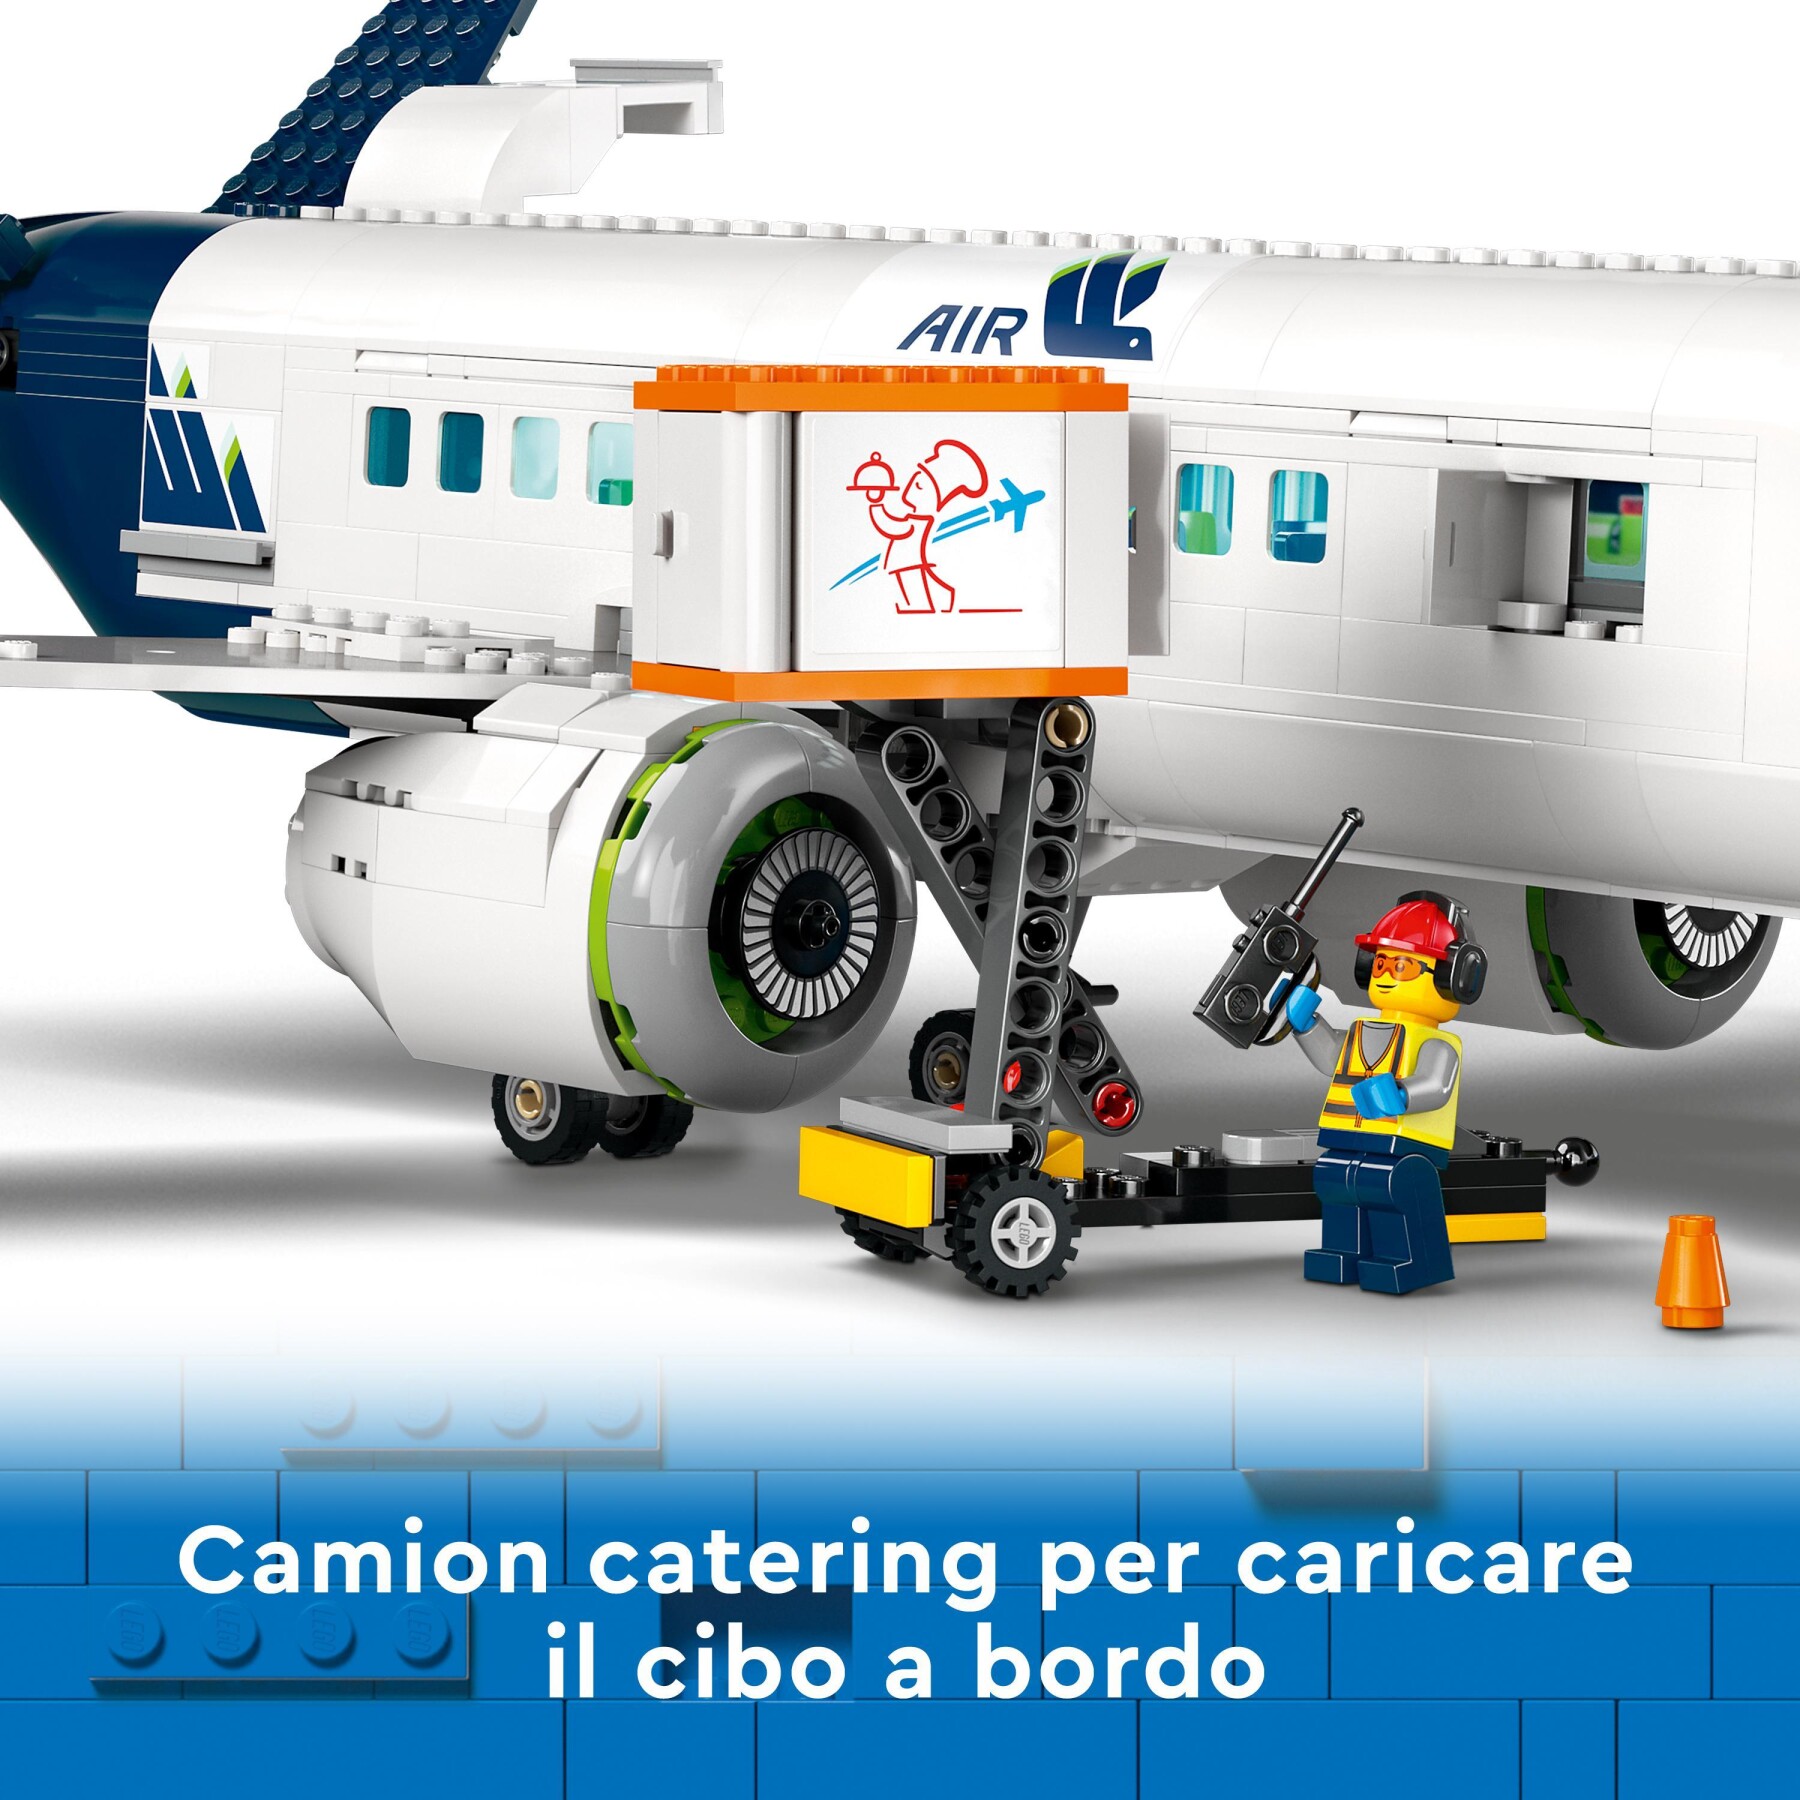 Lego city 60367 aereo passeggeri, modellino di aeroplano